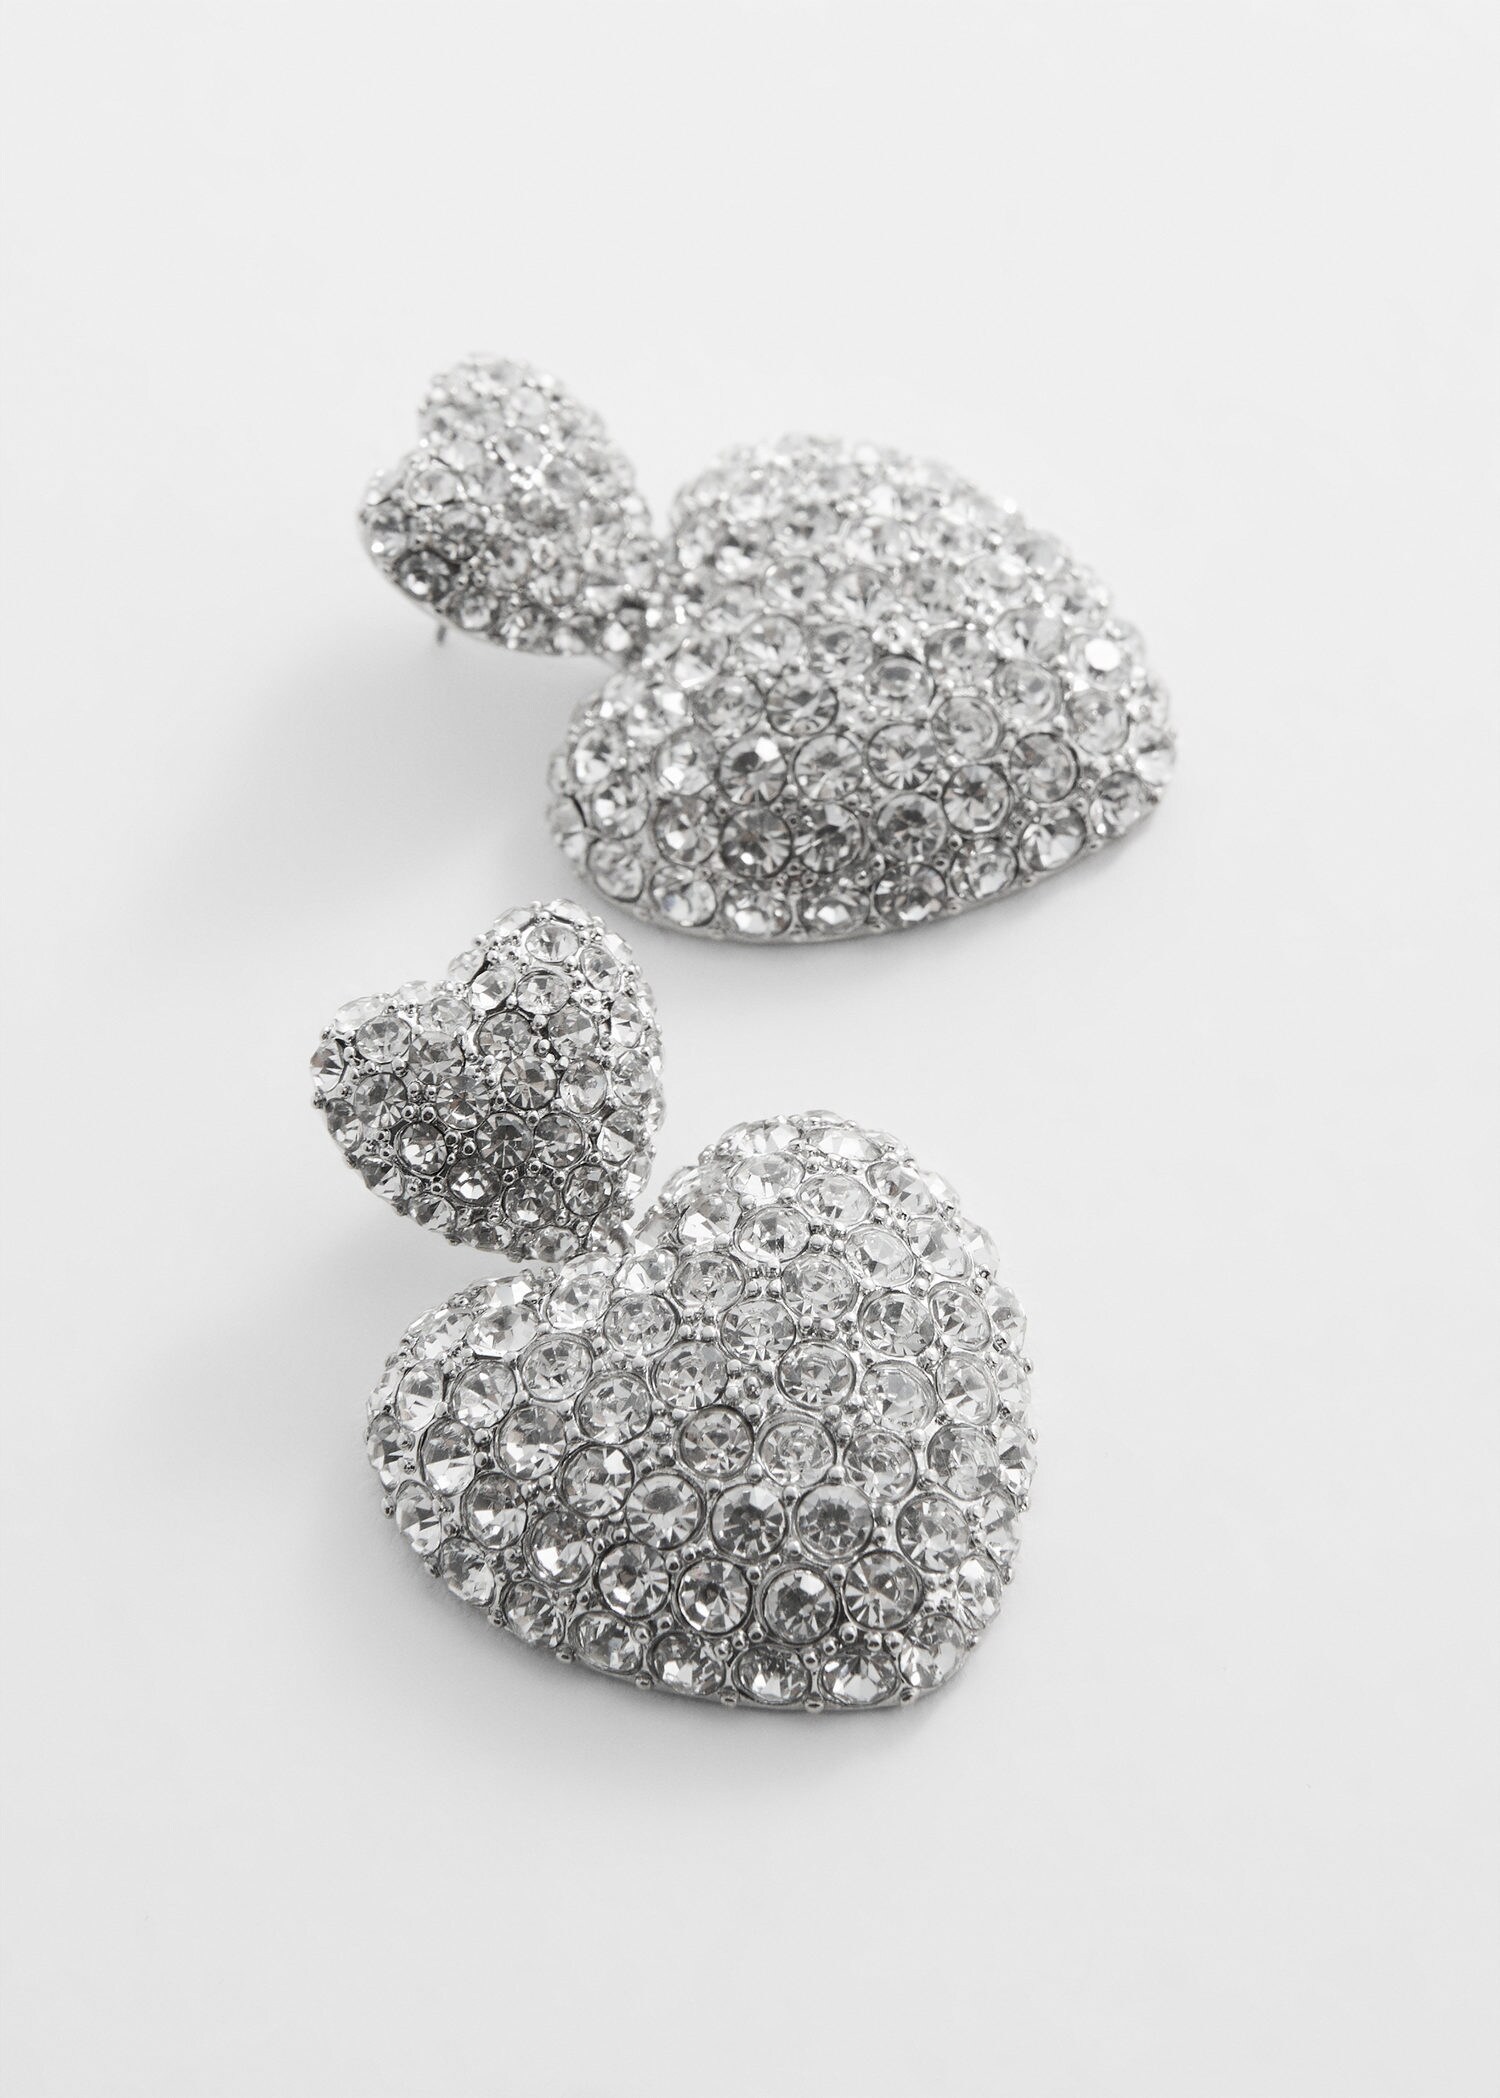 Swarovski Sparkly Crystal Heart Shaped Earrings Drop Heart Earrings 925  Sterling Silver Earrings Love Earrings Valentines Day Gift - Etsy